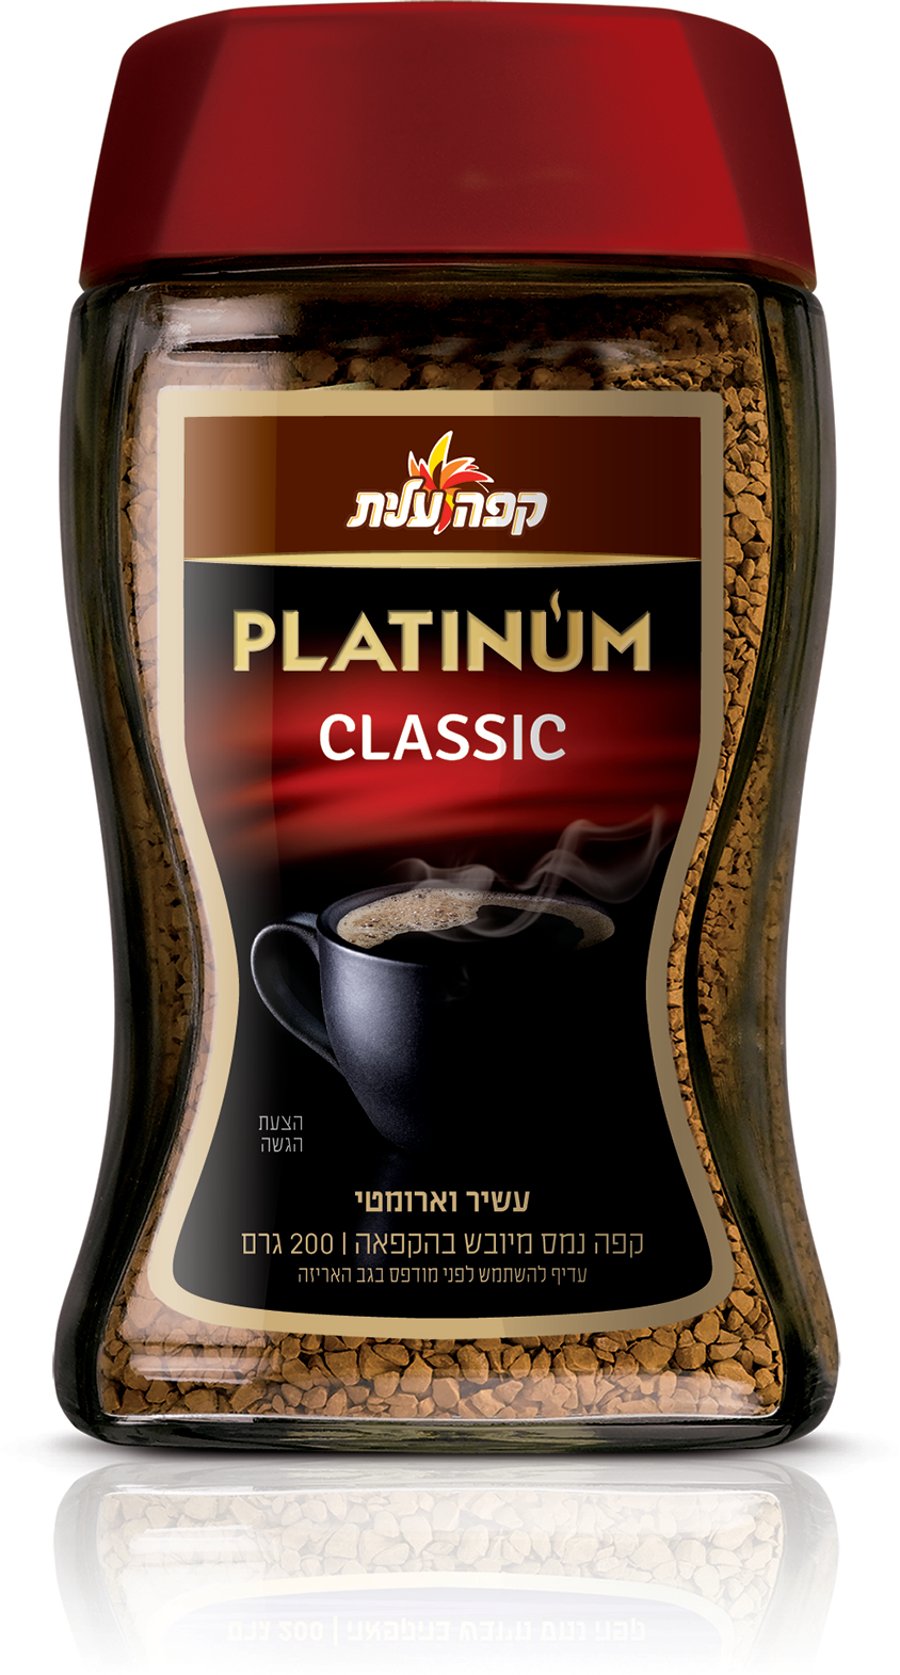 רק קפה PLATINUM CLASSIC אהוב ע"י רוב הטועמים